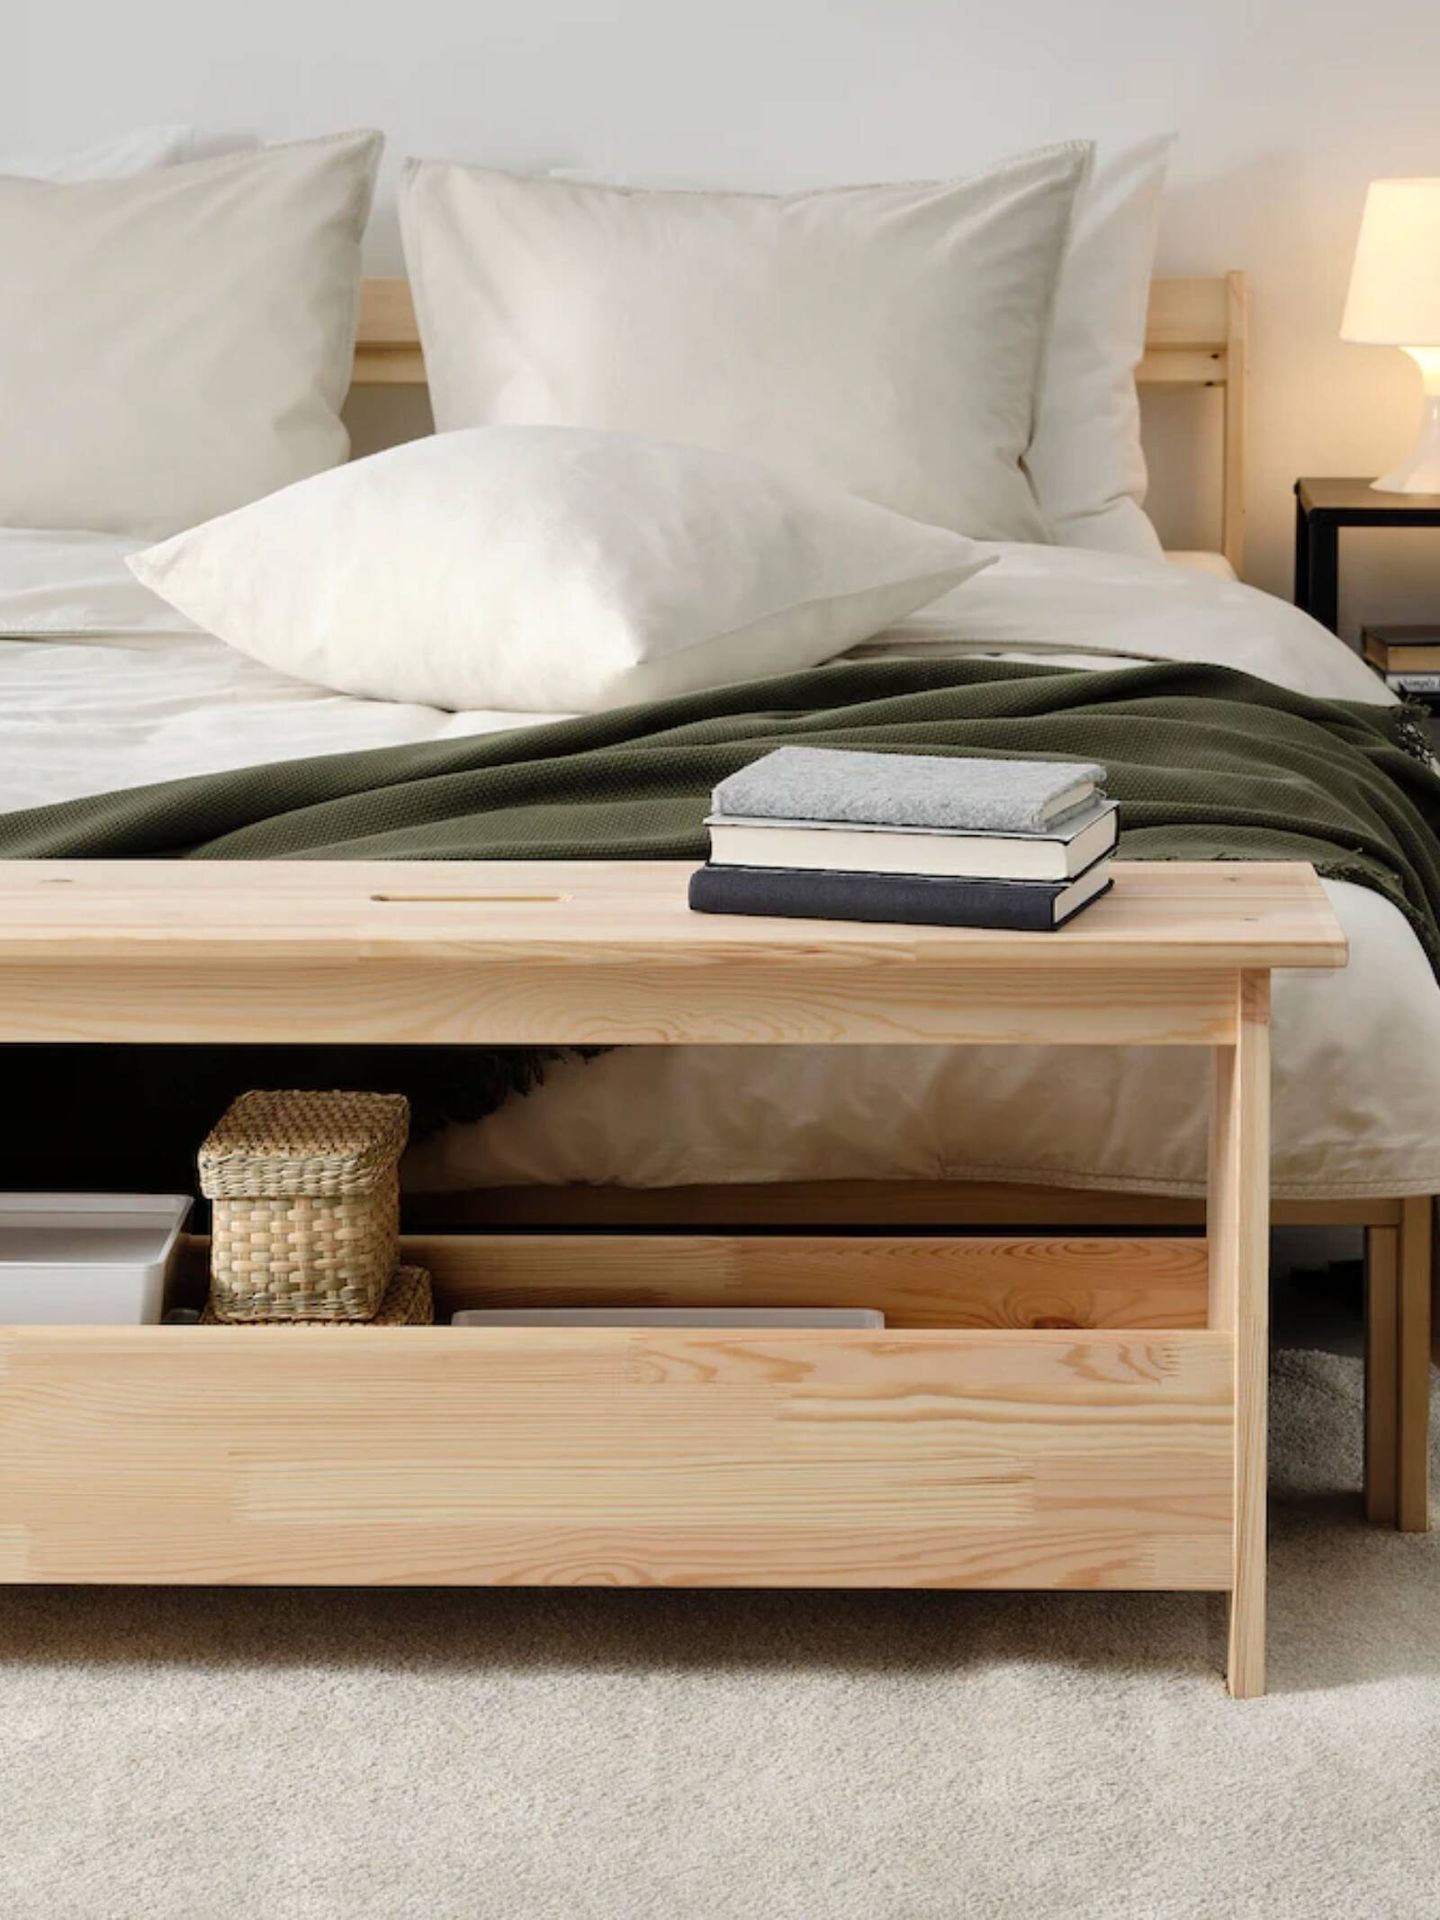 El banco de madera de Ikea ideal para cualquier estancia. (Cortesía)